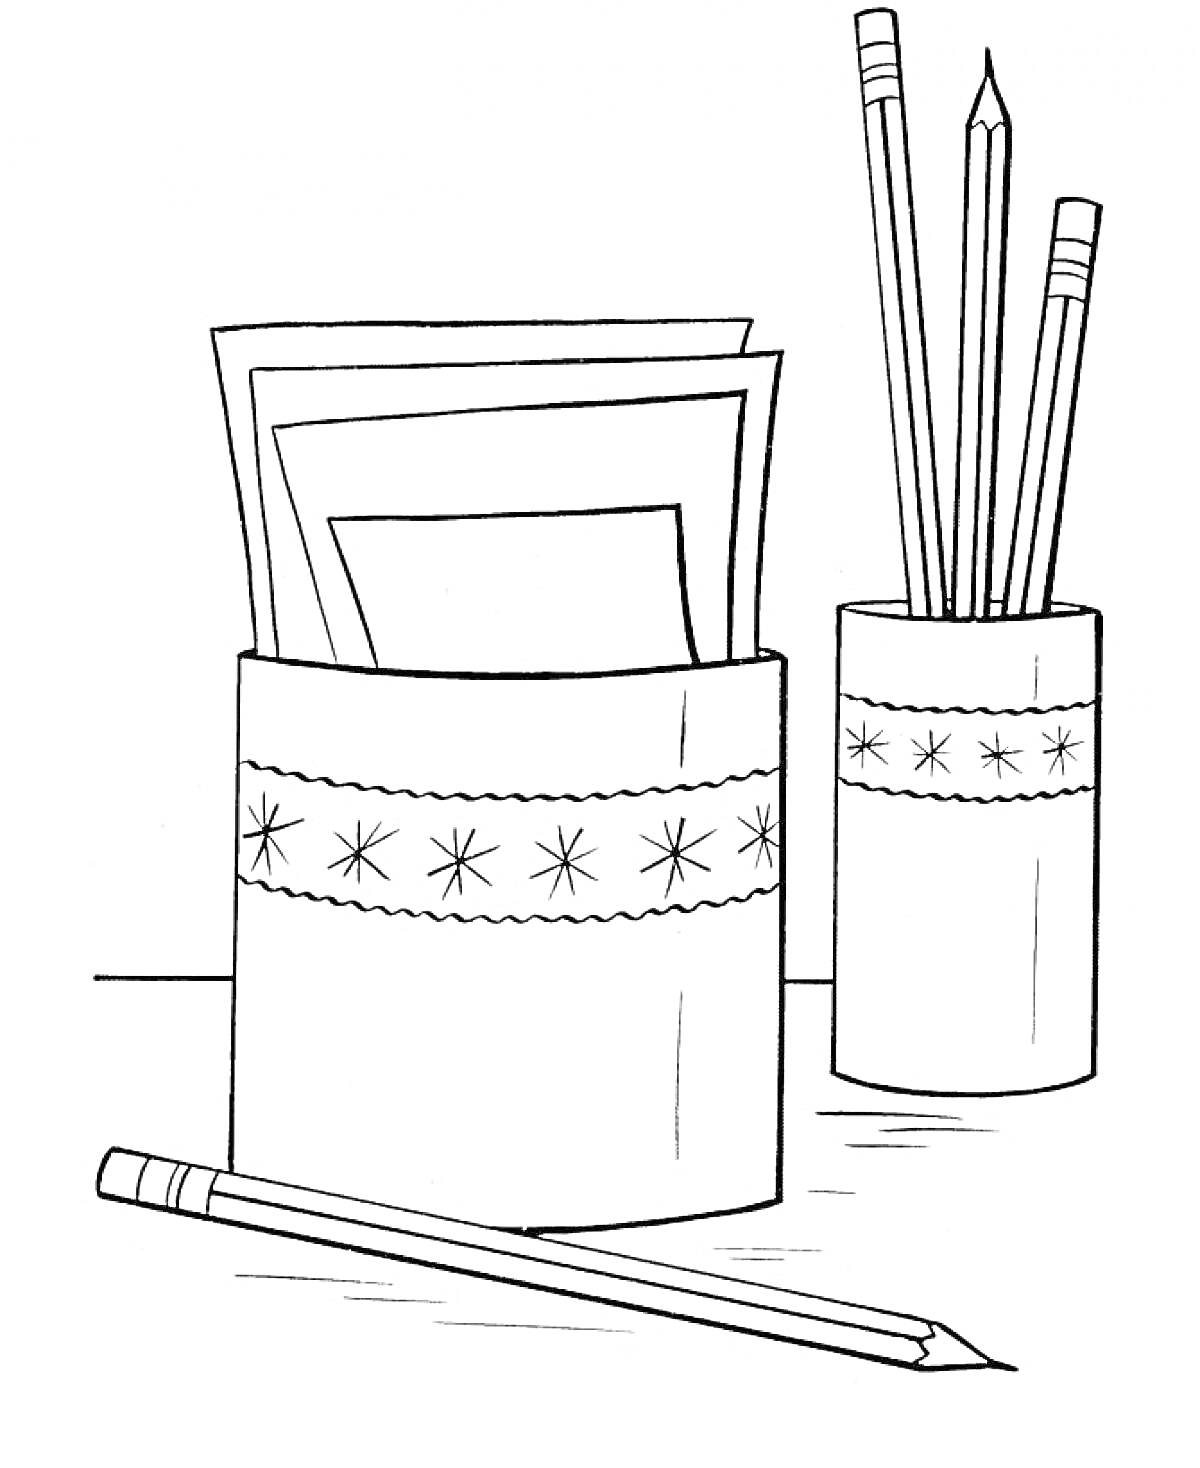 Раскраска стакан для карандашей и листов бумаги, карандаши, листы бумаги, карандаш на столе